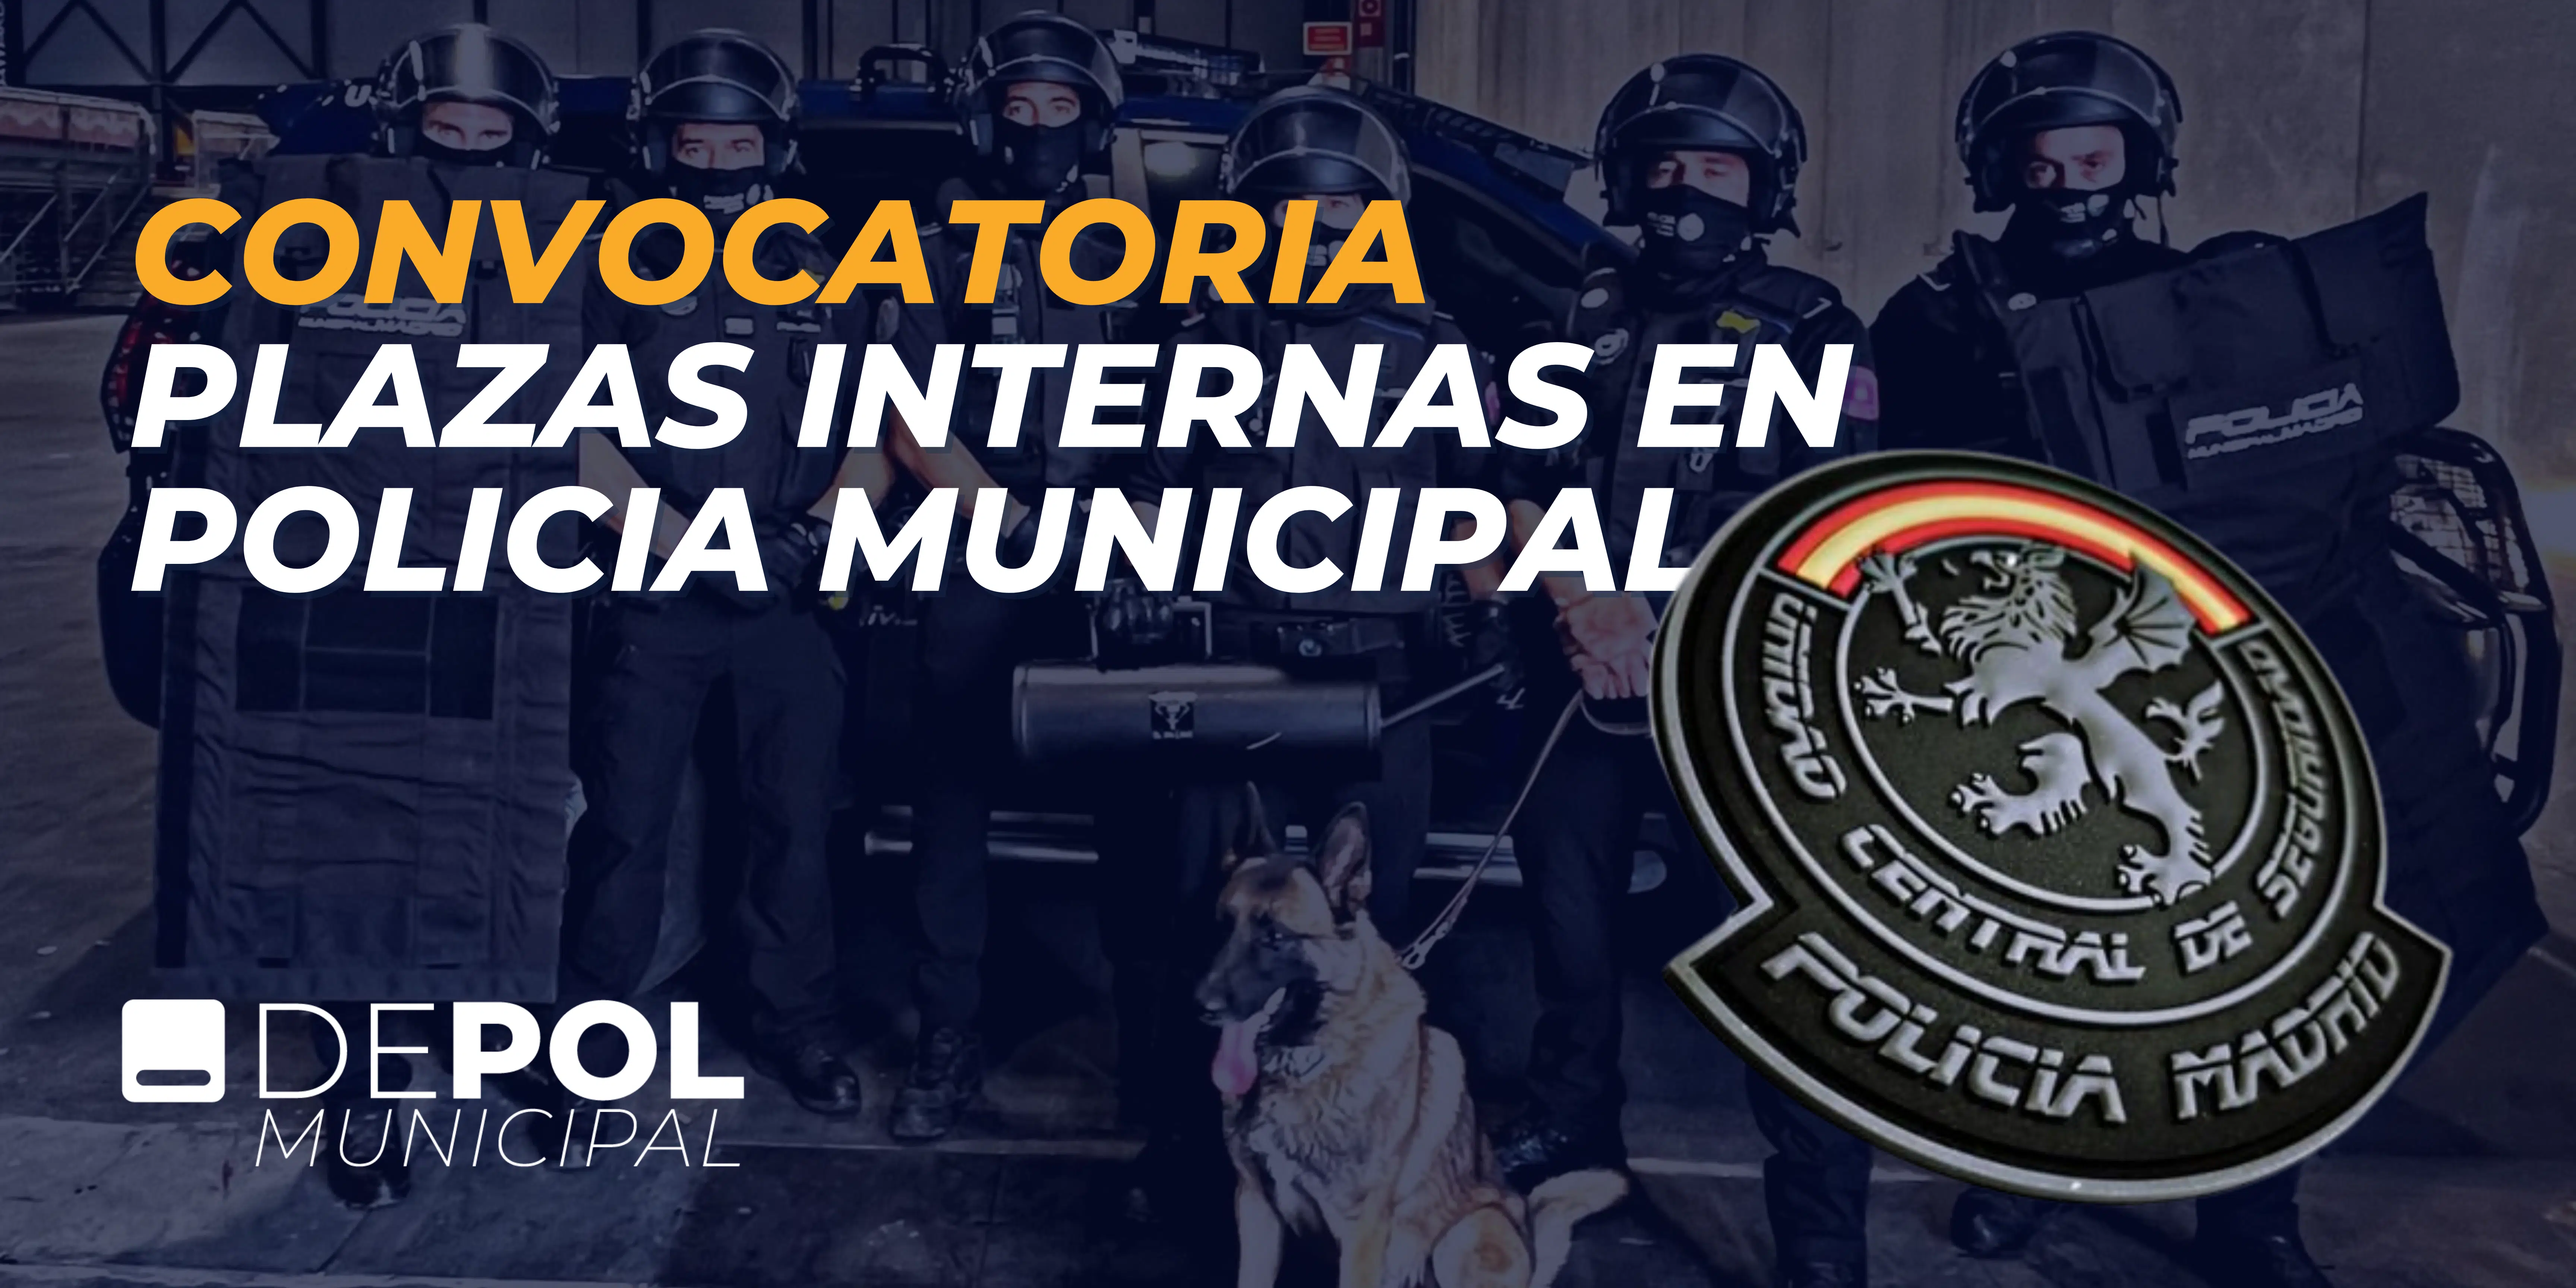 El Ayuntamiento de Madrid ha convocado plazas para la Unidad Central de Seguridad